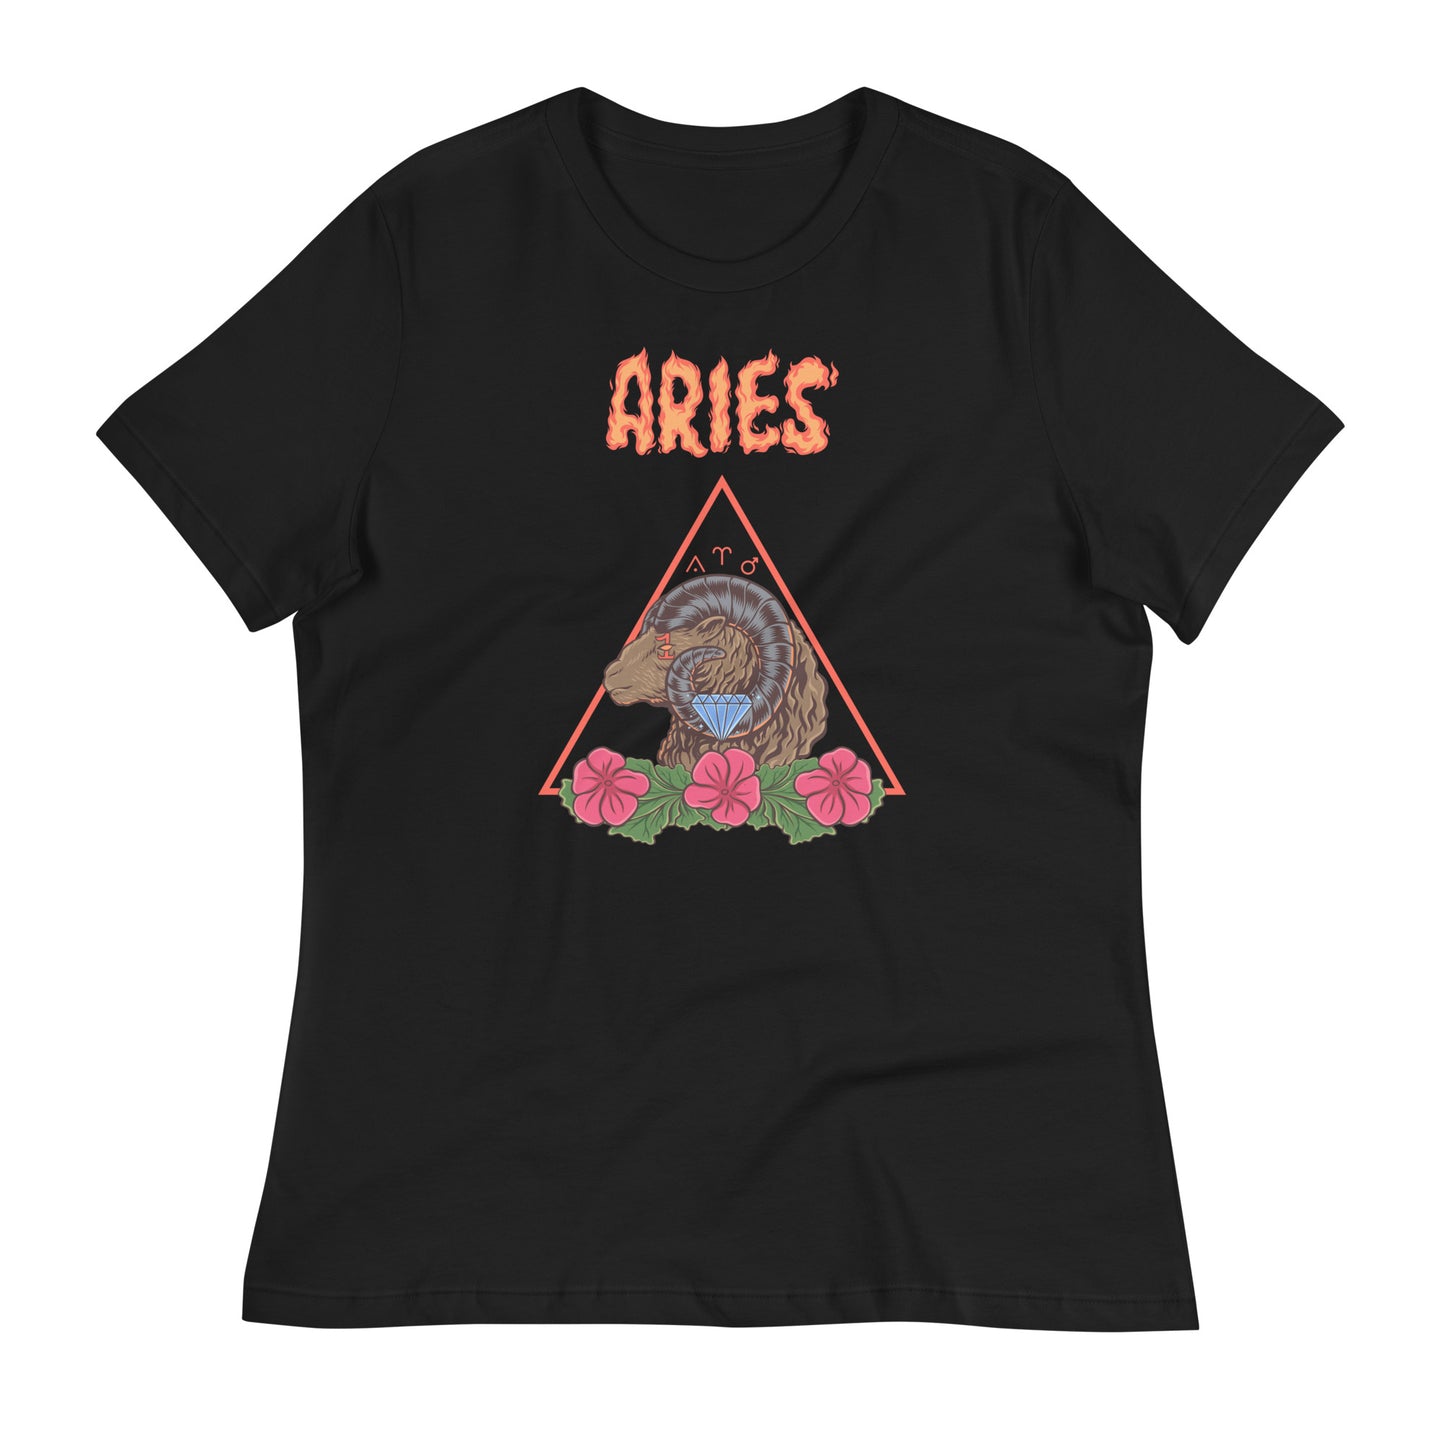 Aries Black Graphic T-Shirt